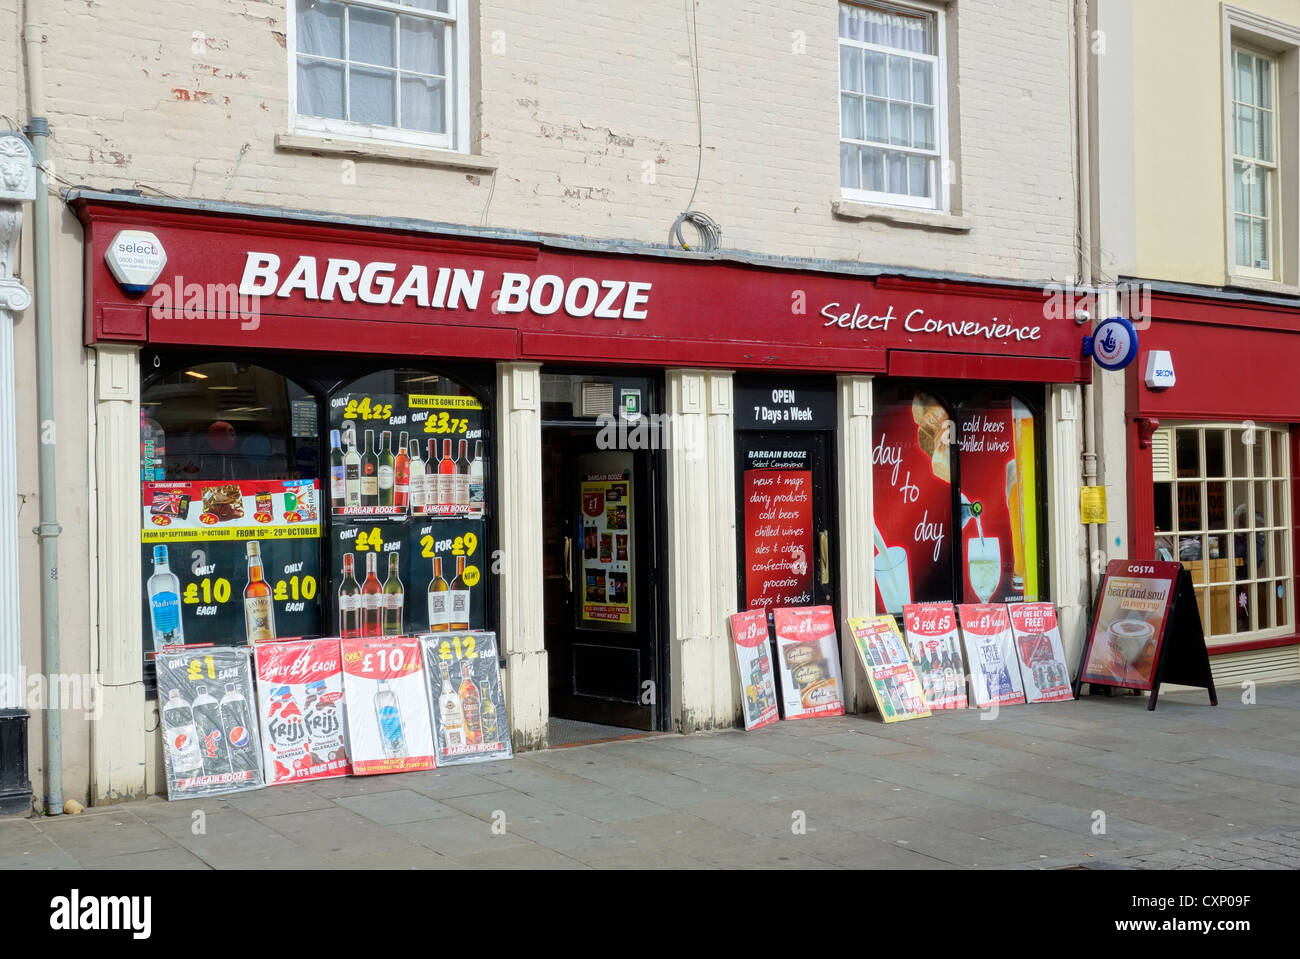 Bargain Booze licence off shop à Brecon, Powys Pays de Galles au Royaume-Uni. Banque D'Images